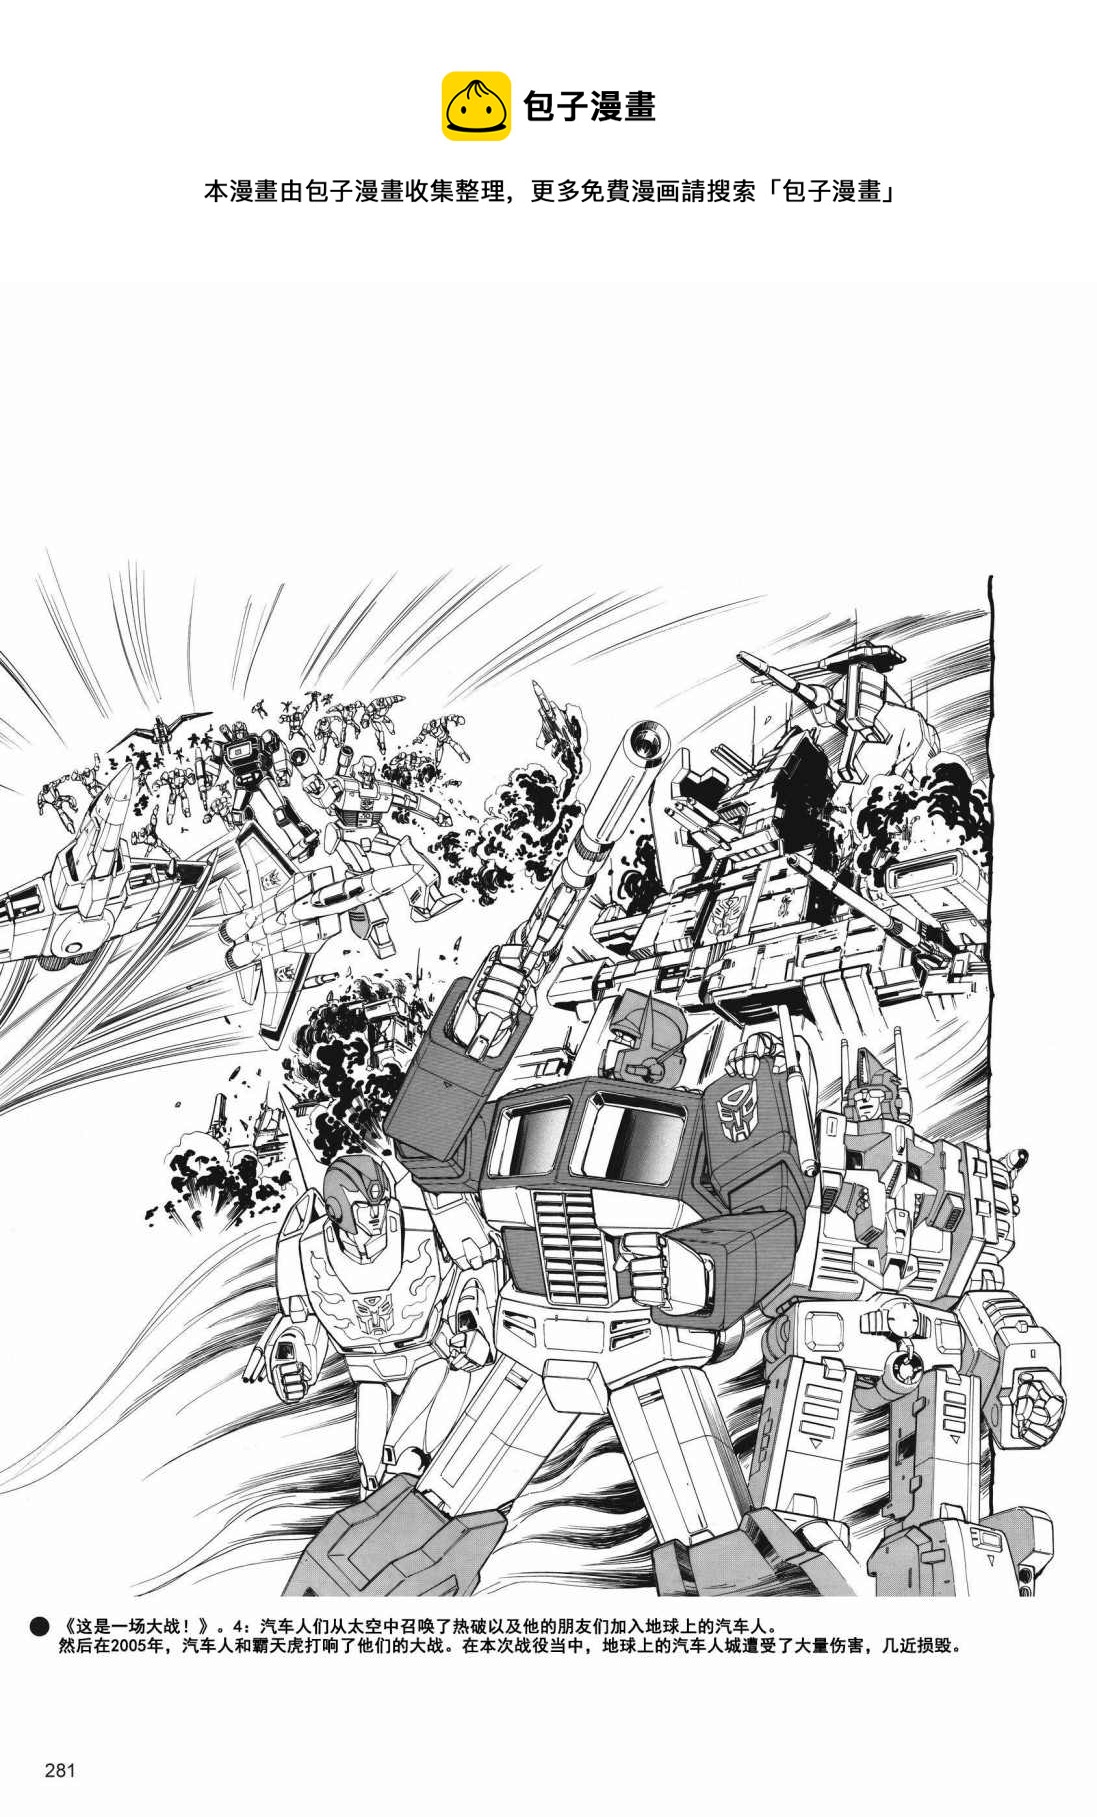 变形金刚日版G1杂志插画 - 变形金刚：头领战士 - 5